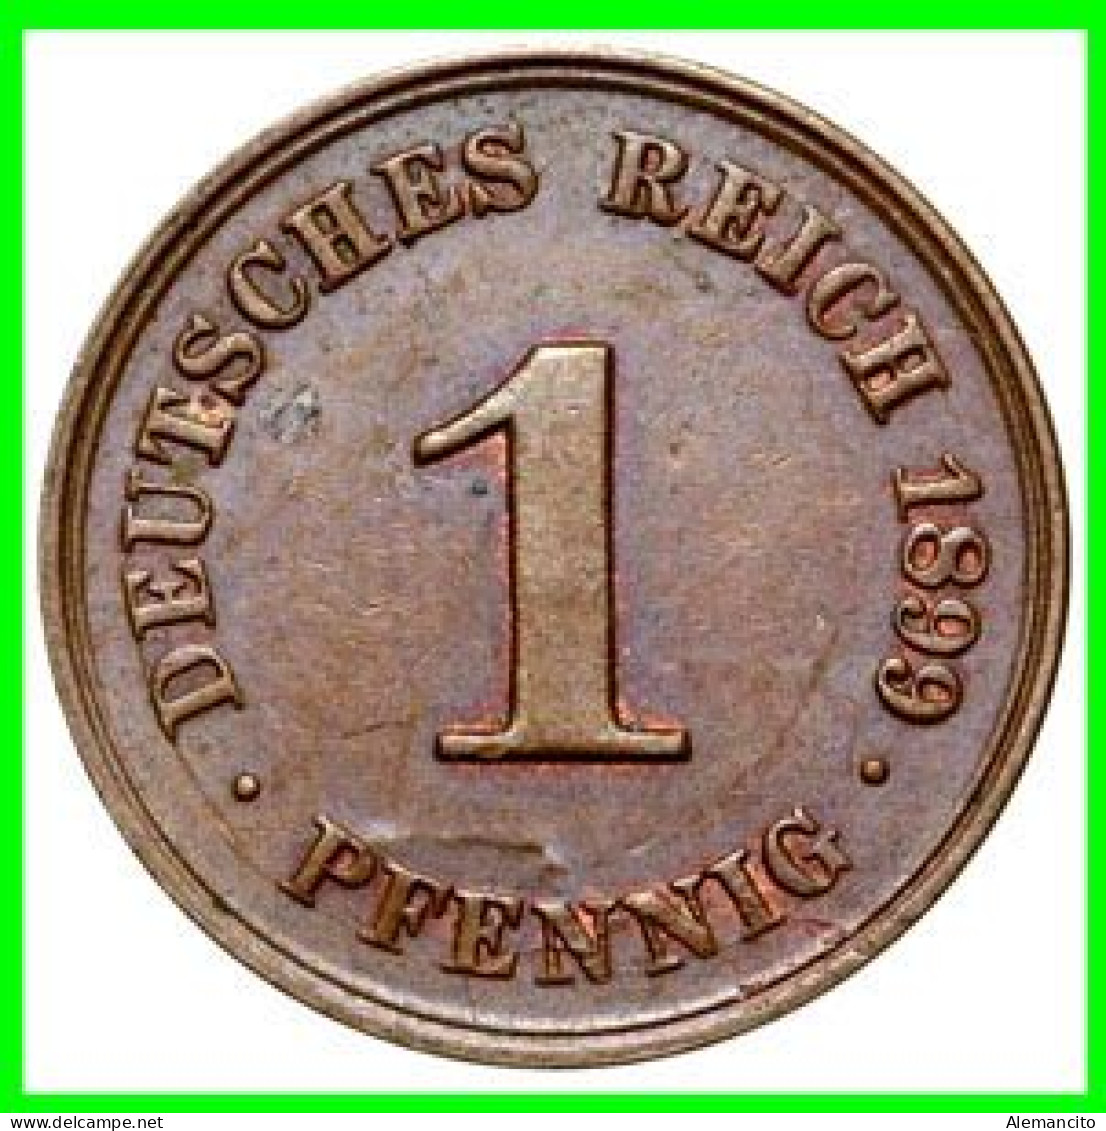 ALEMANIA – GERMANY - IMPERIO MONEDA DE COBRE DIAMETRO 17.5 Mm. DEL AÑO 1899 – CECA-D- KM-10  GOBERNANTE: WILHELM II - 1 Pfennig